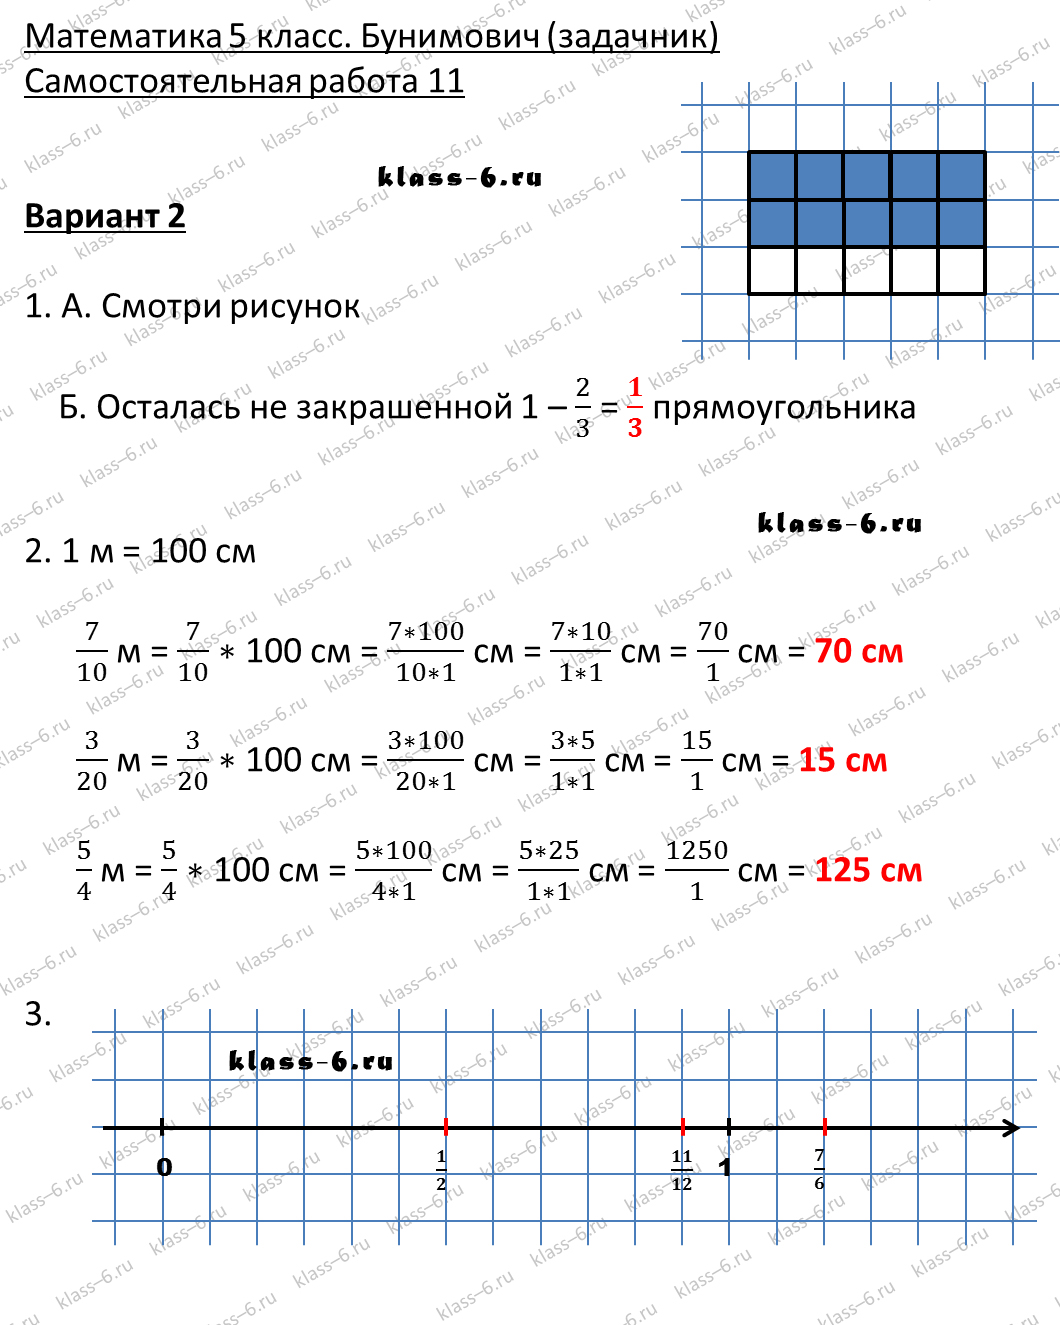 решебник и гдз по математике задачник Бунимович 5 класс самостоятельная работа 11-v2